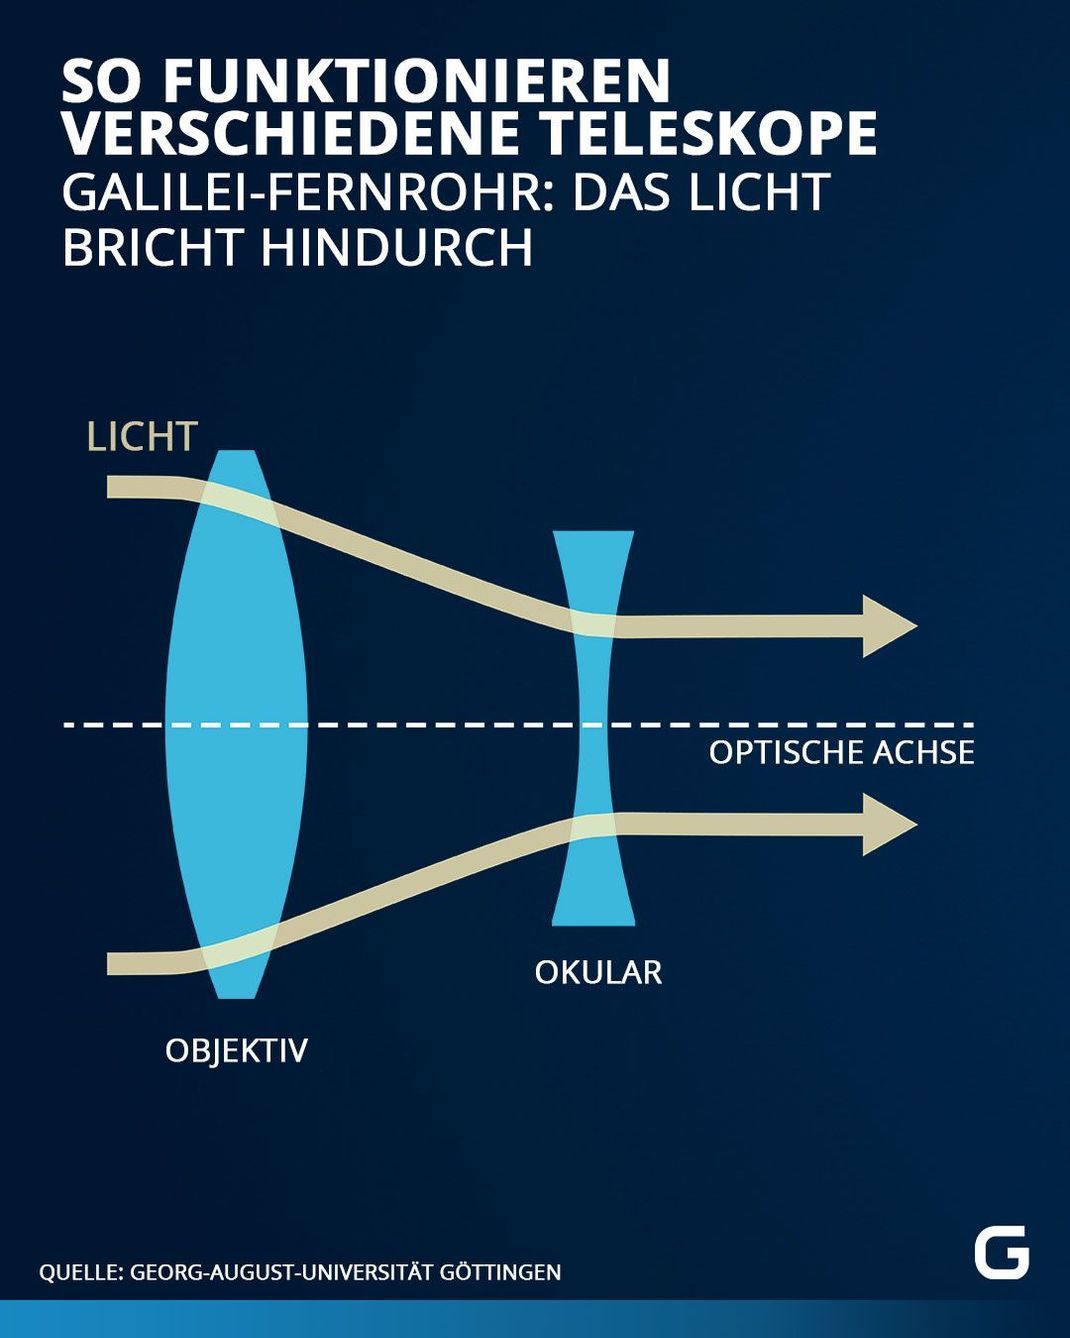 Funktionsweise von Teleskopen: Beim Galilei-Fernrohr bricht das Licht durch das Objektiv.